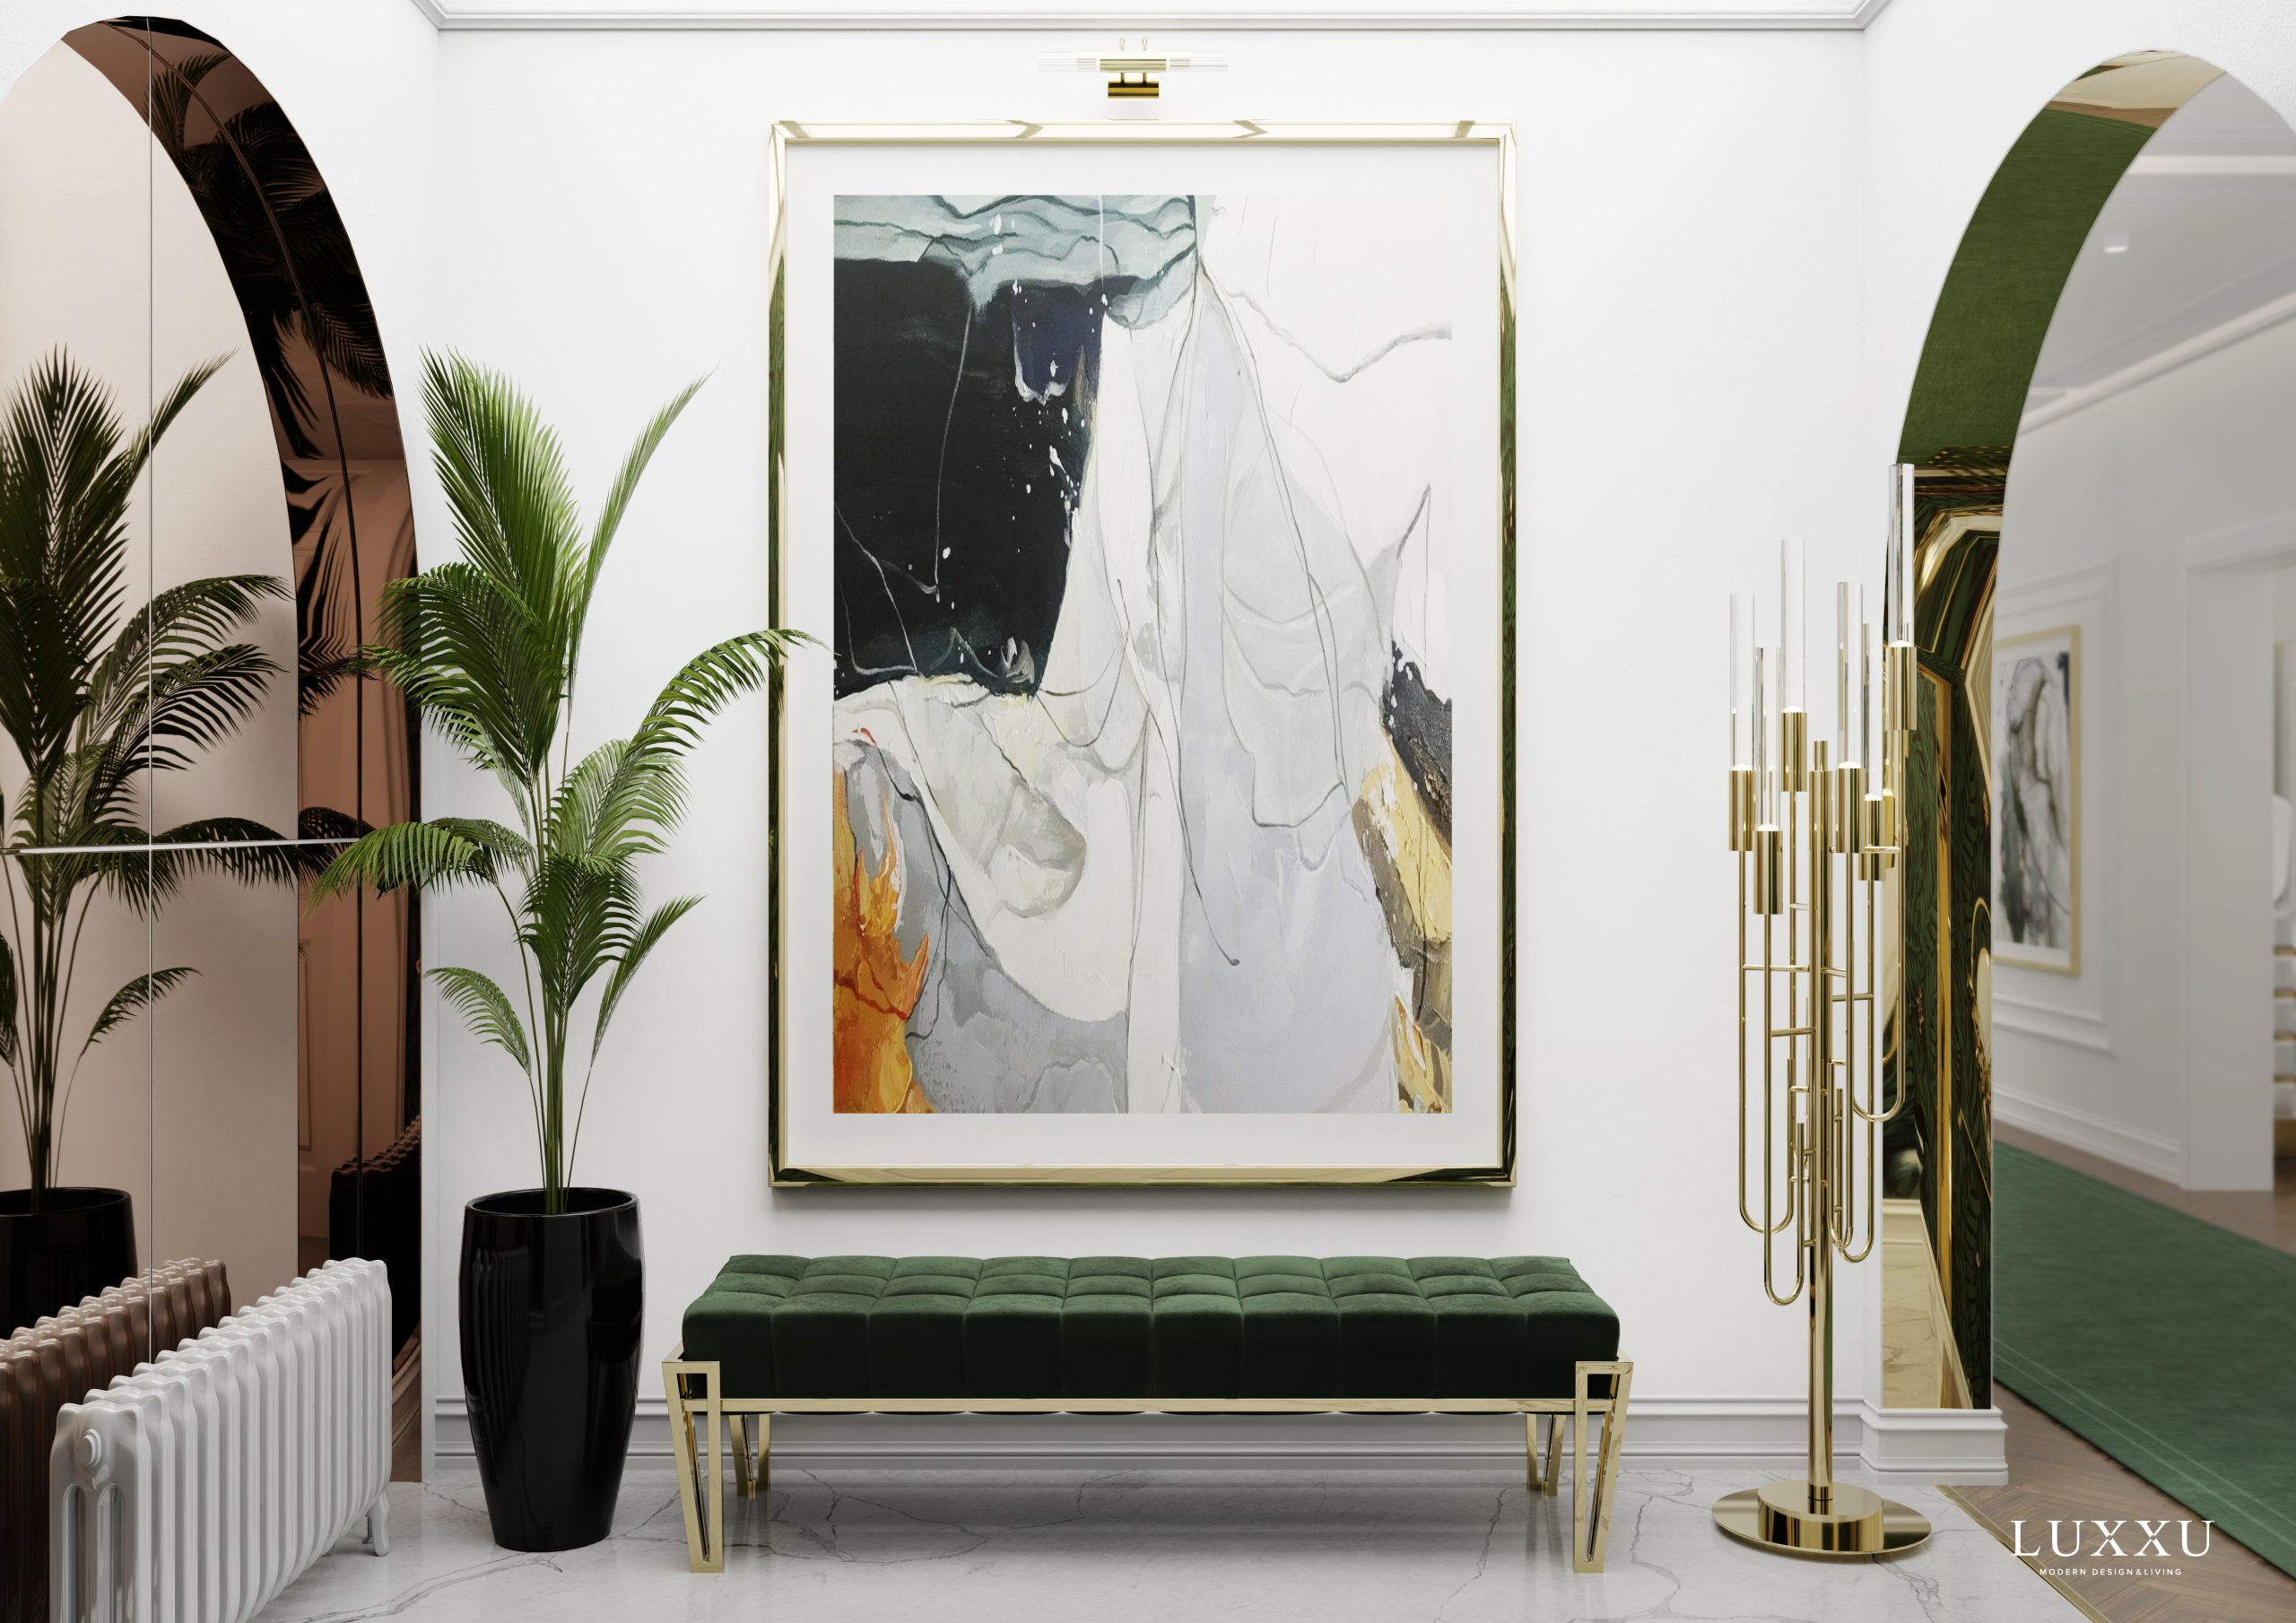 Vivant Parisian Apartment - The Full Charm Of Paris In This Luxxu Design